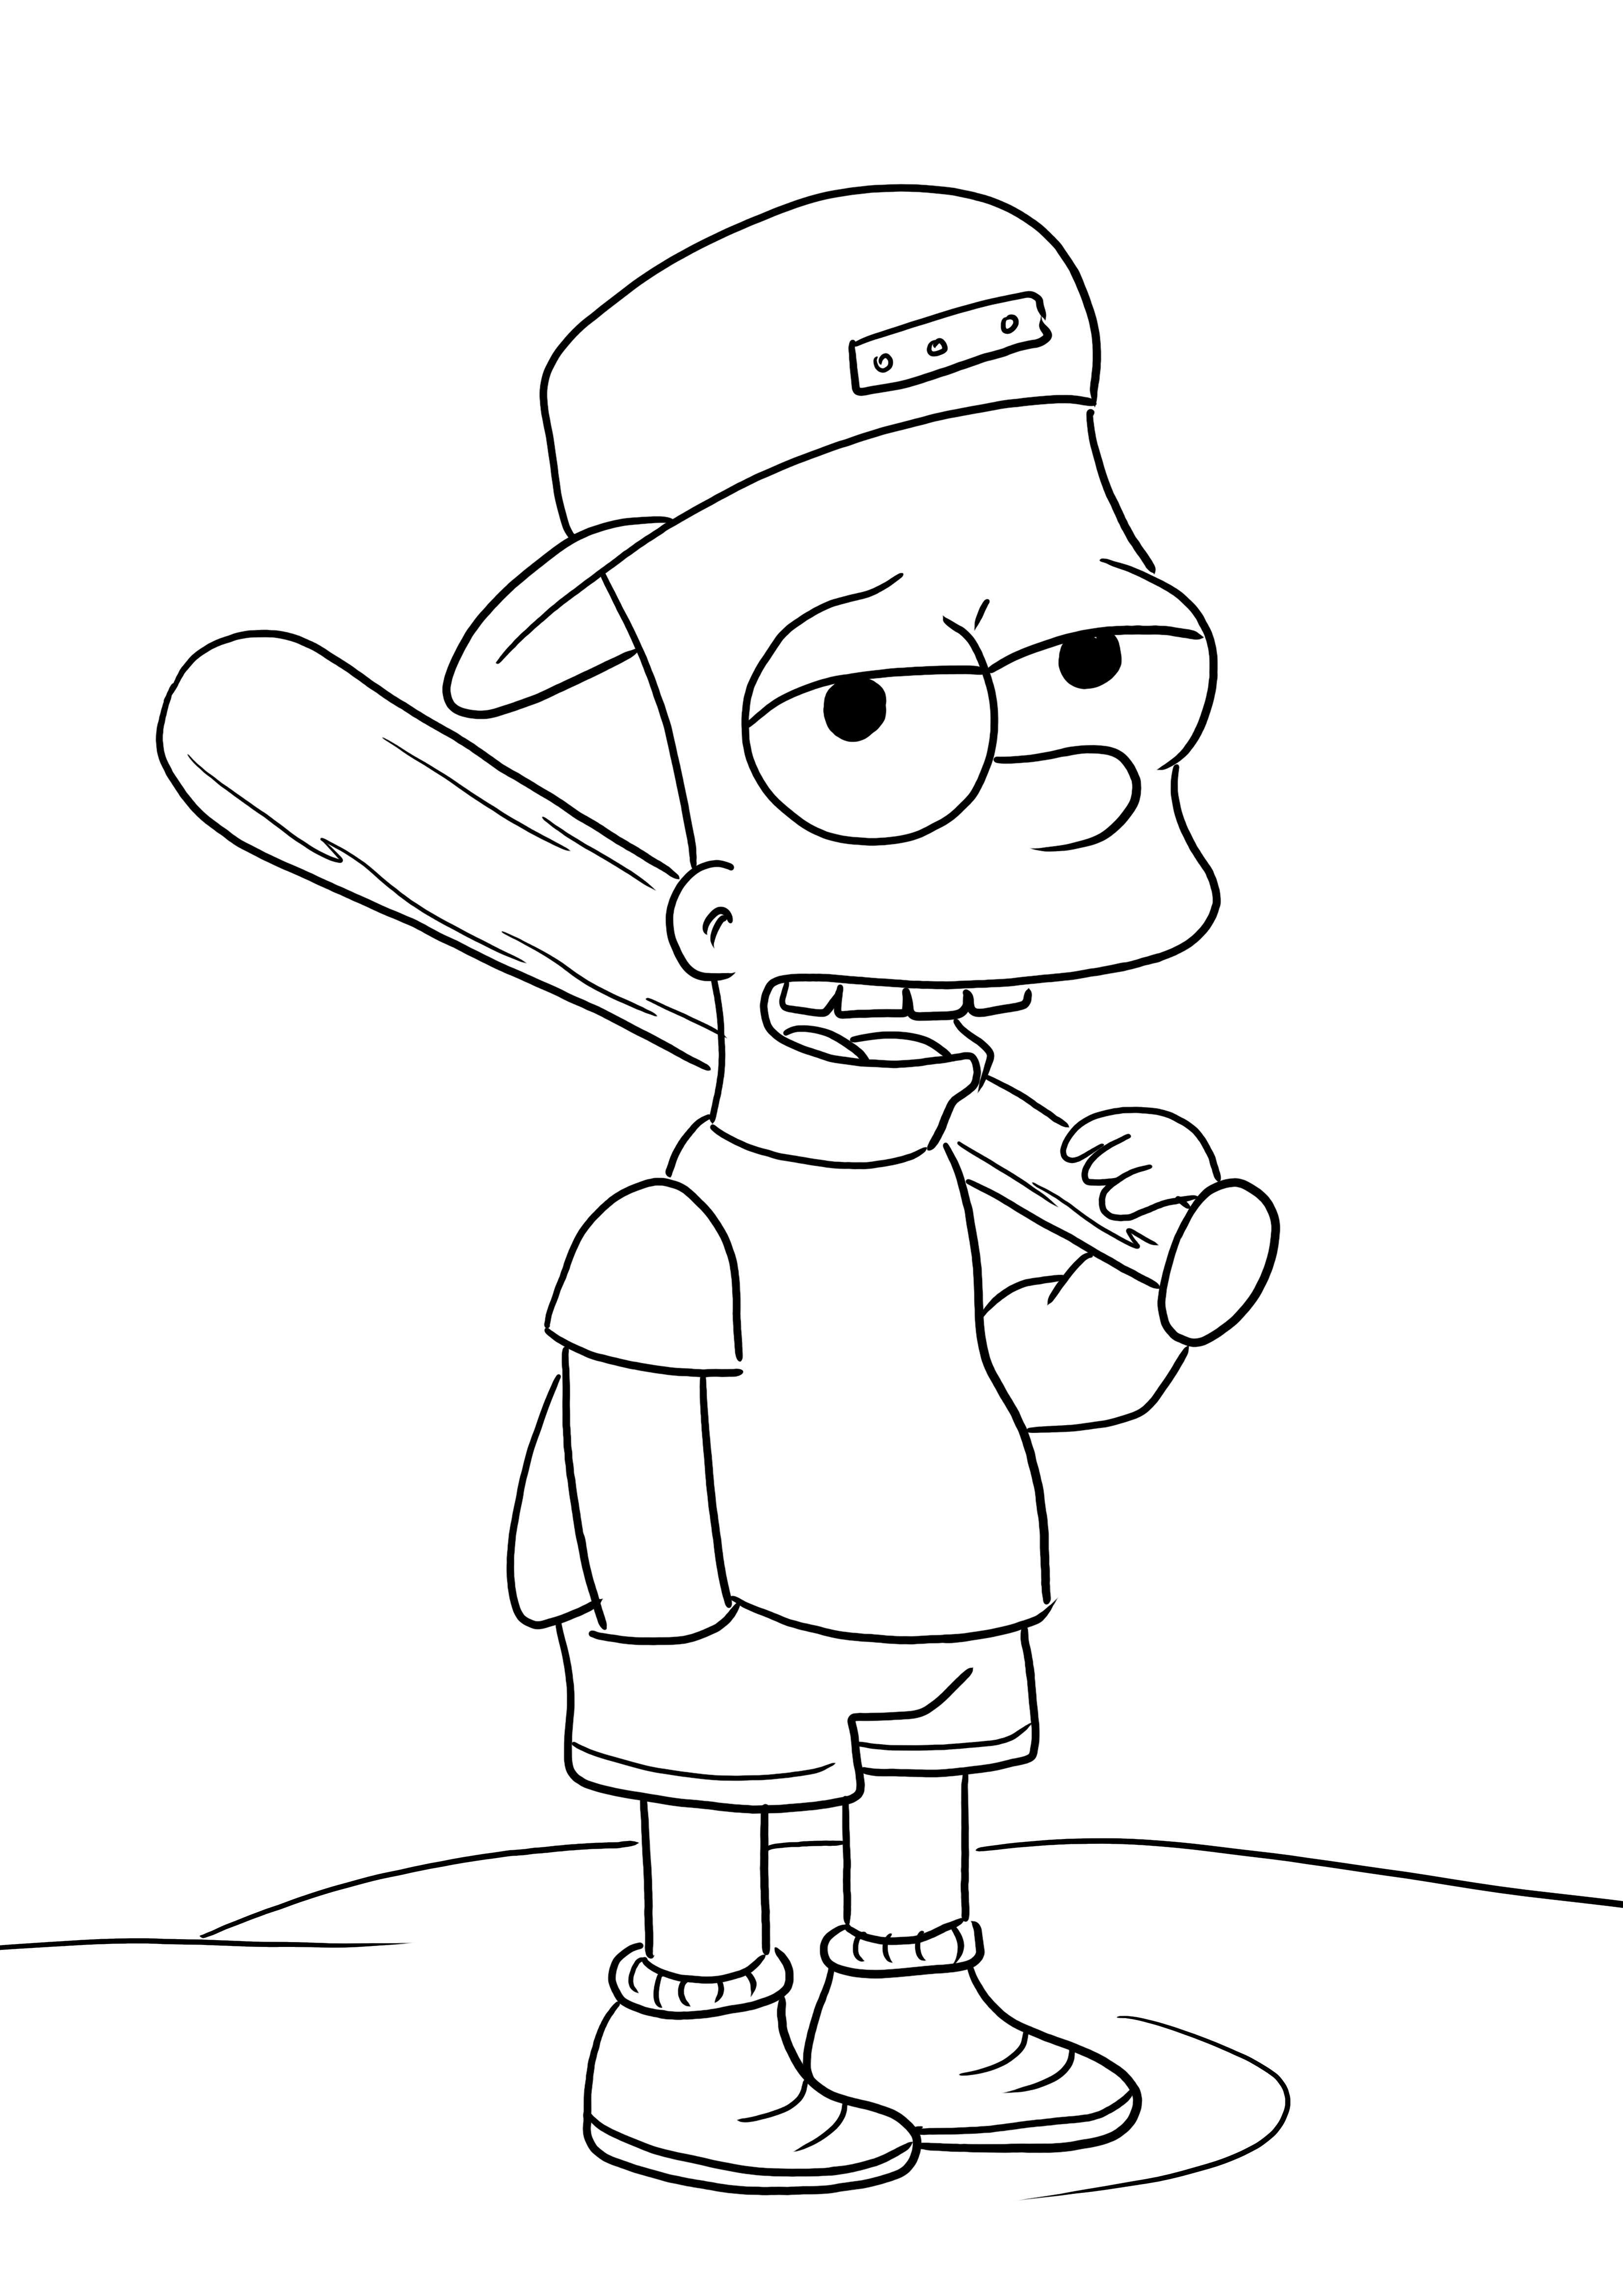 Bart Simpsons ja hänen pesäpallomailansa painatus ja väritön